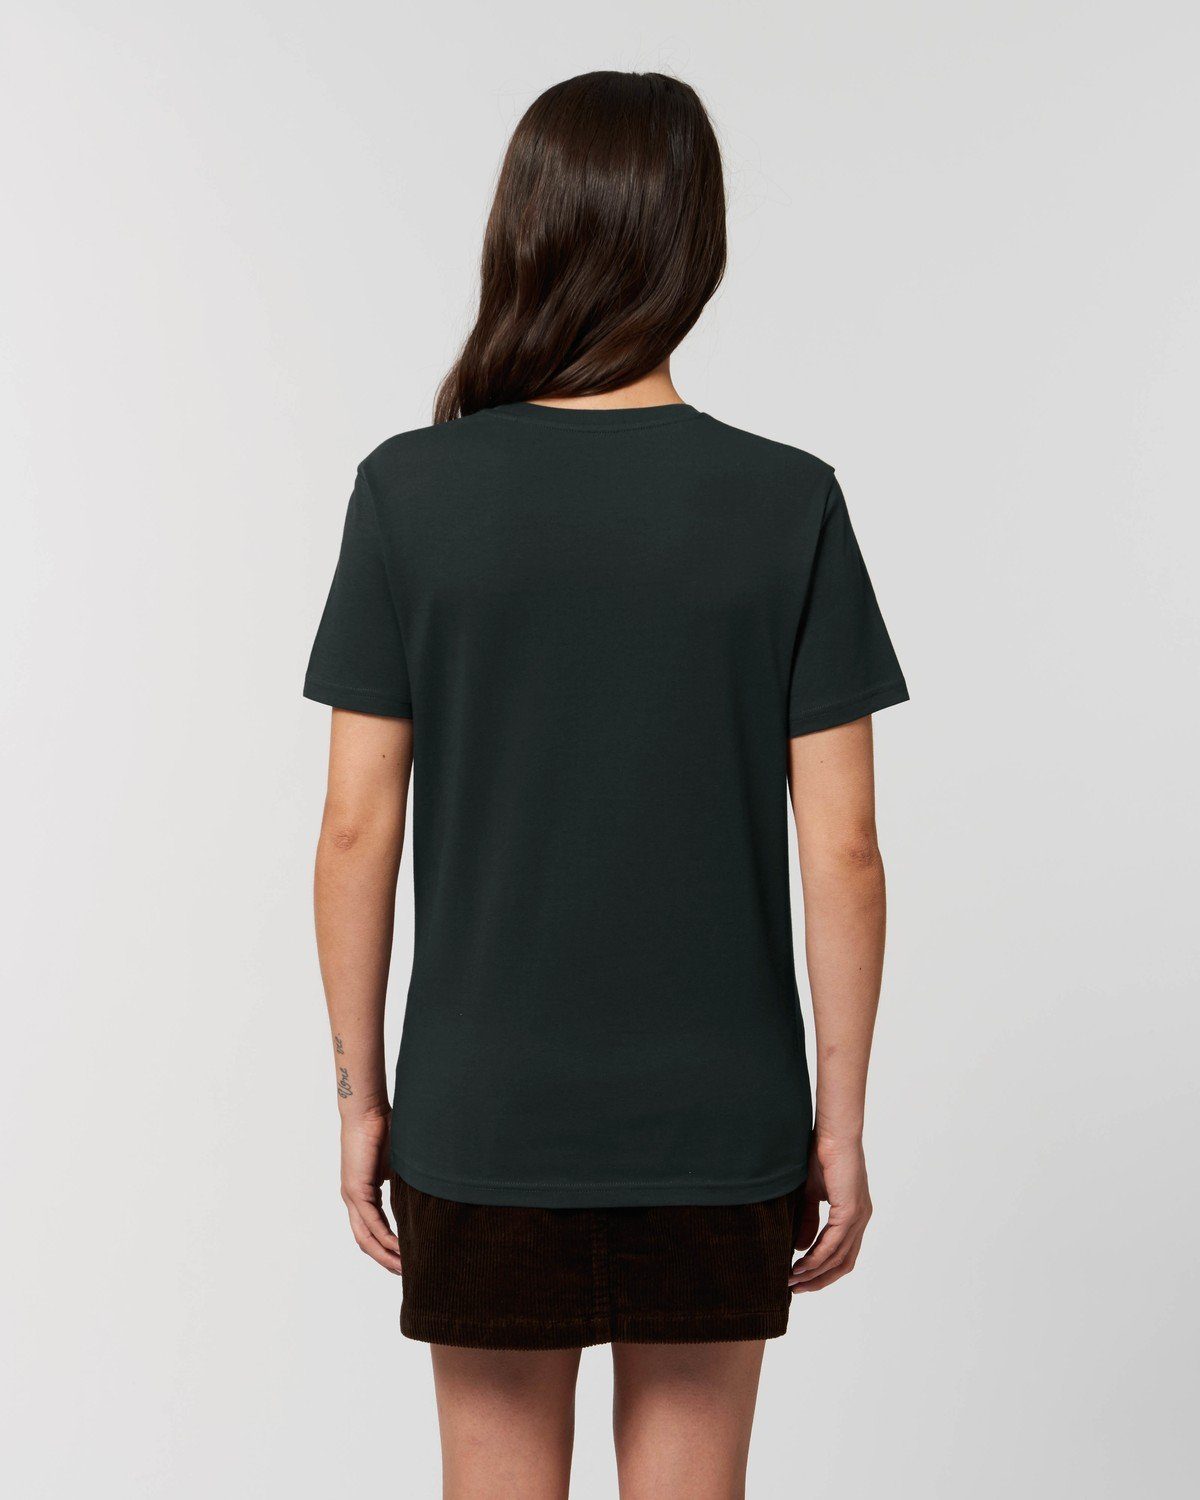 Hilltop 100% Unisex Black Bio-Baumwolle Hochwertiges T-Shirt T-Shirt aus